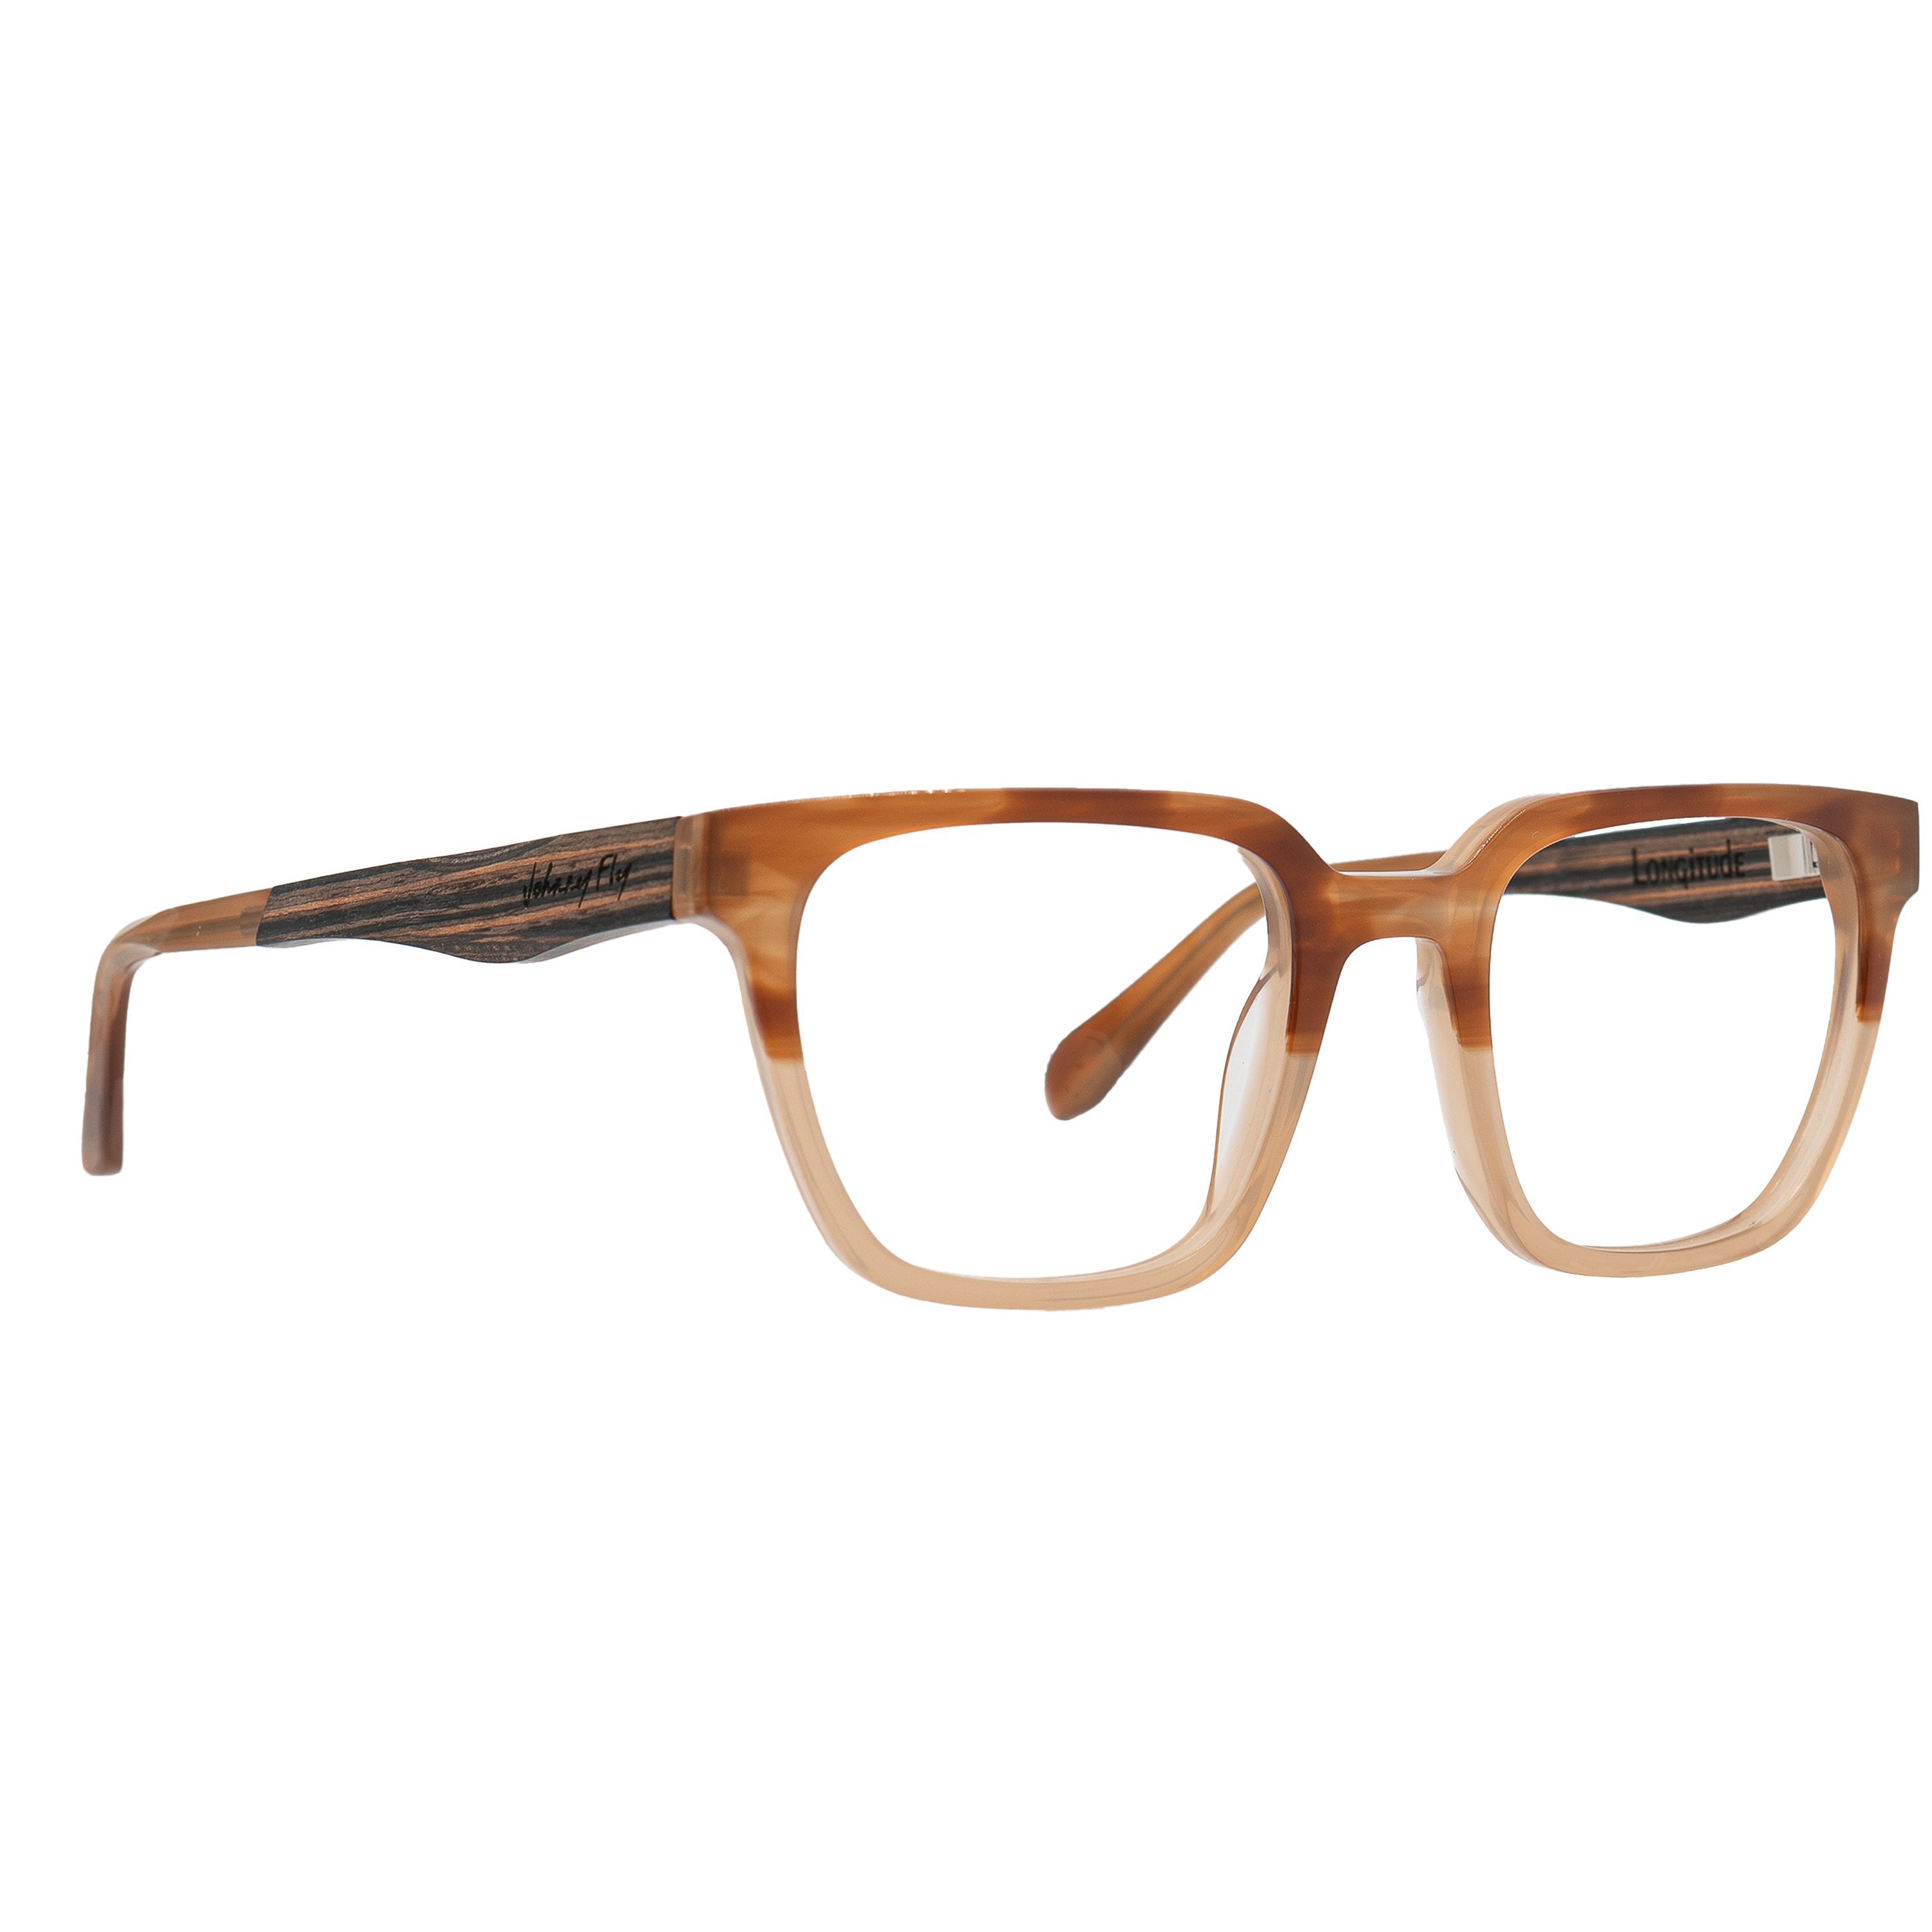 LONGITUDE BLUGARD - Sunset - Blue Light Glasses - Johnny Fly Eyewear 